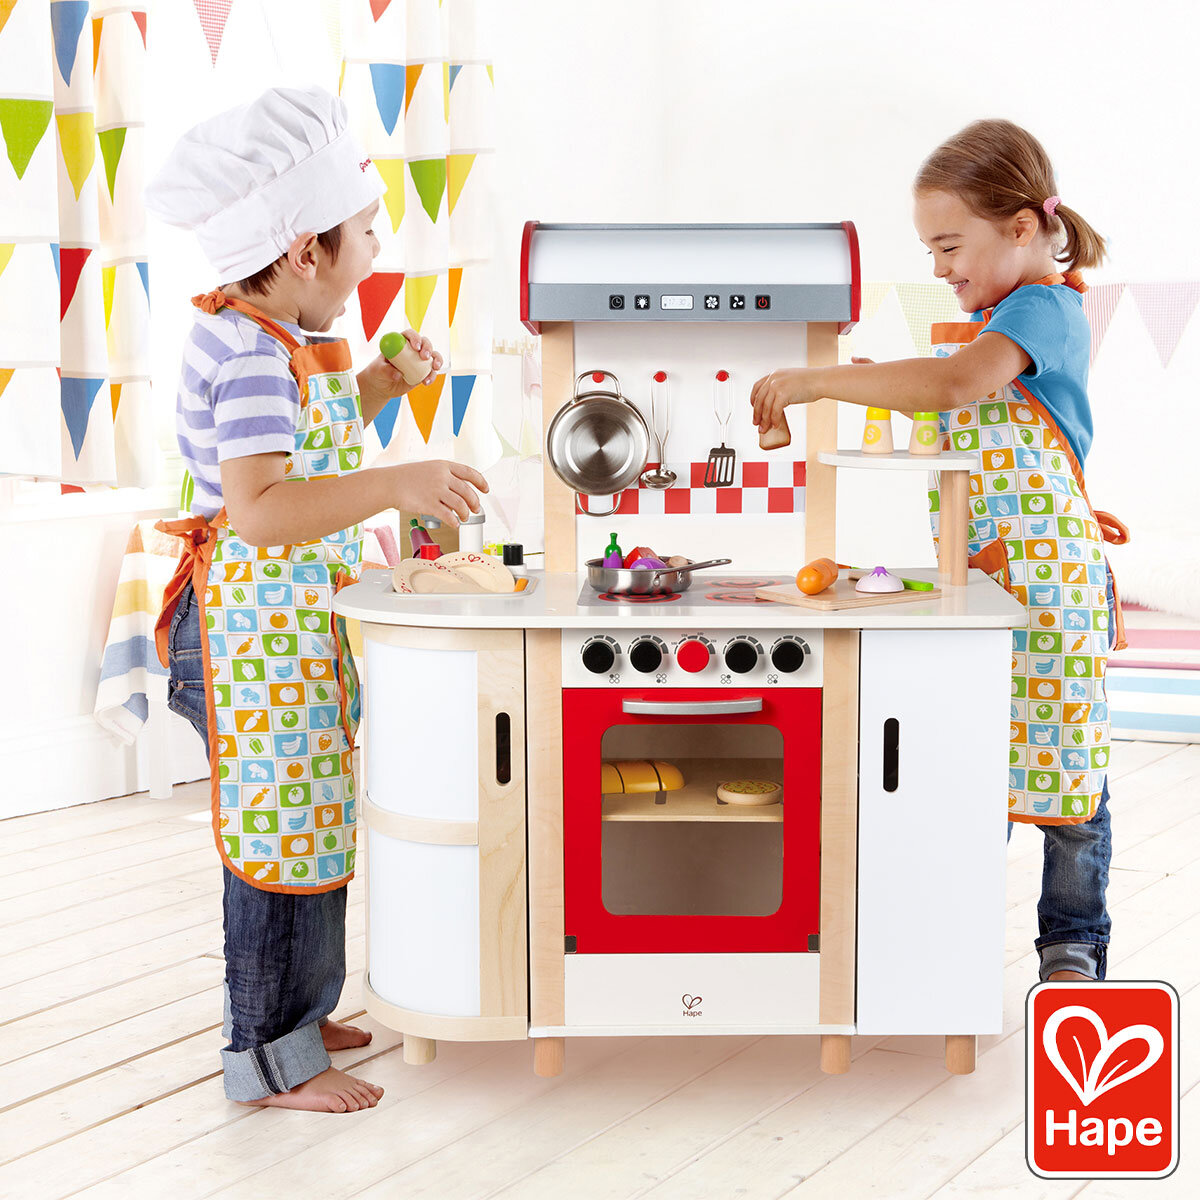 Buy Hape Multi Function Kitchen Lifestyle1 Image at Costco.co.uk